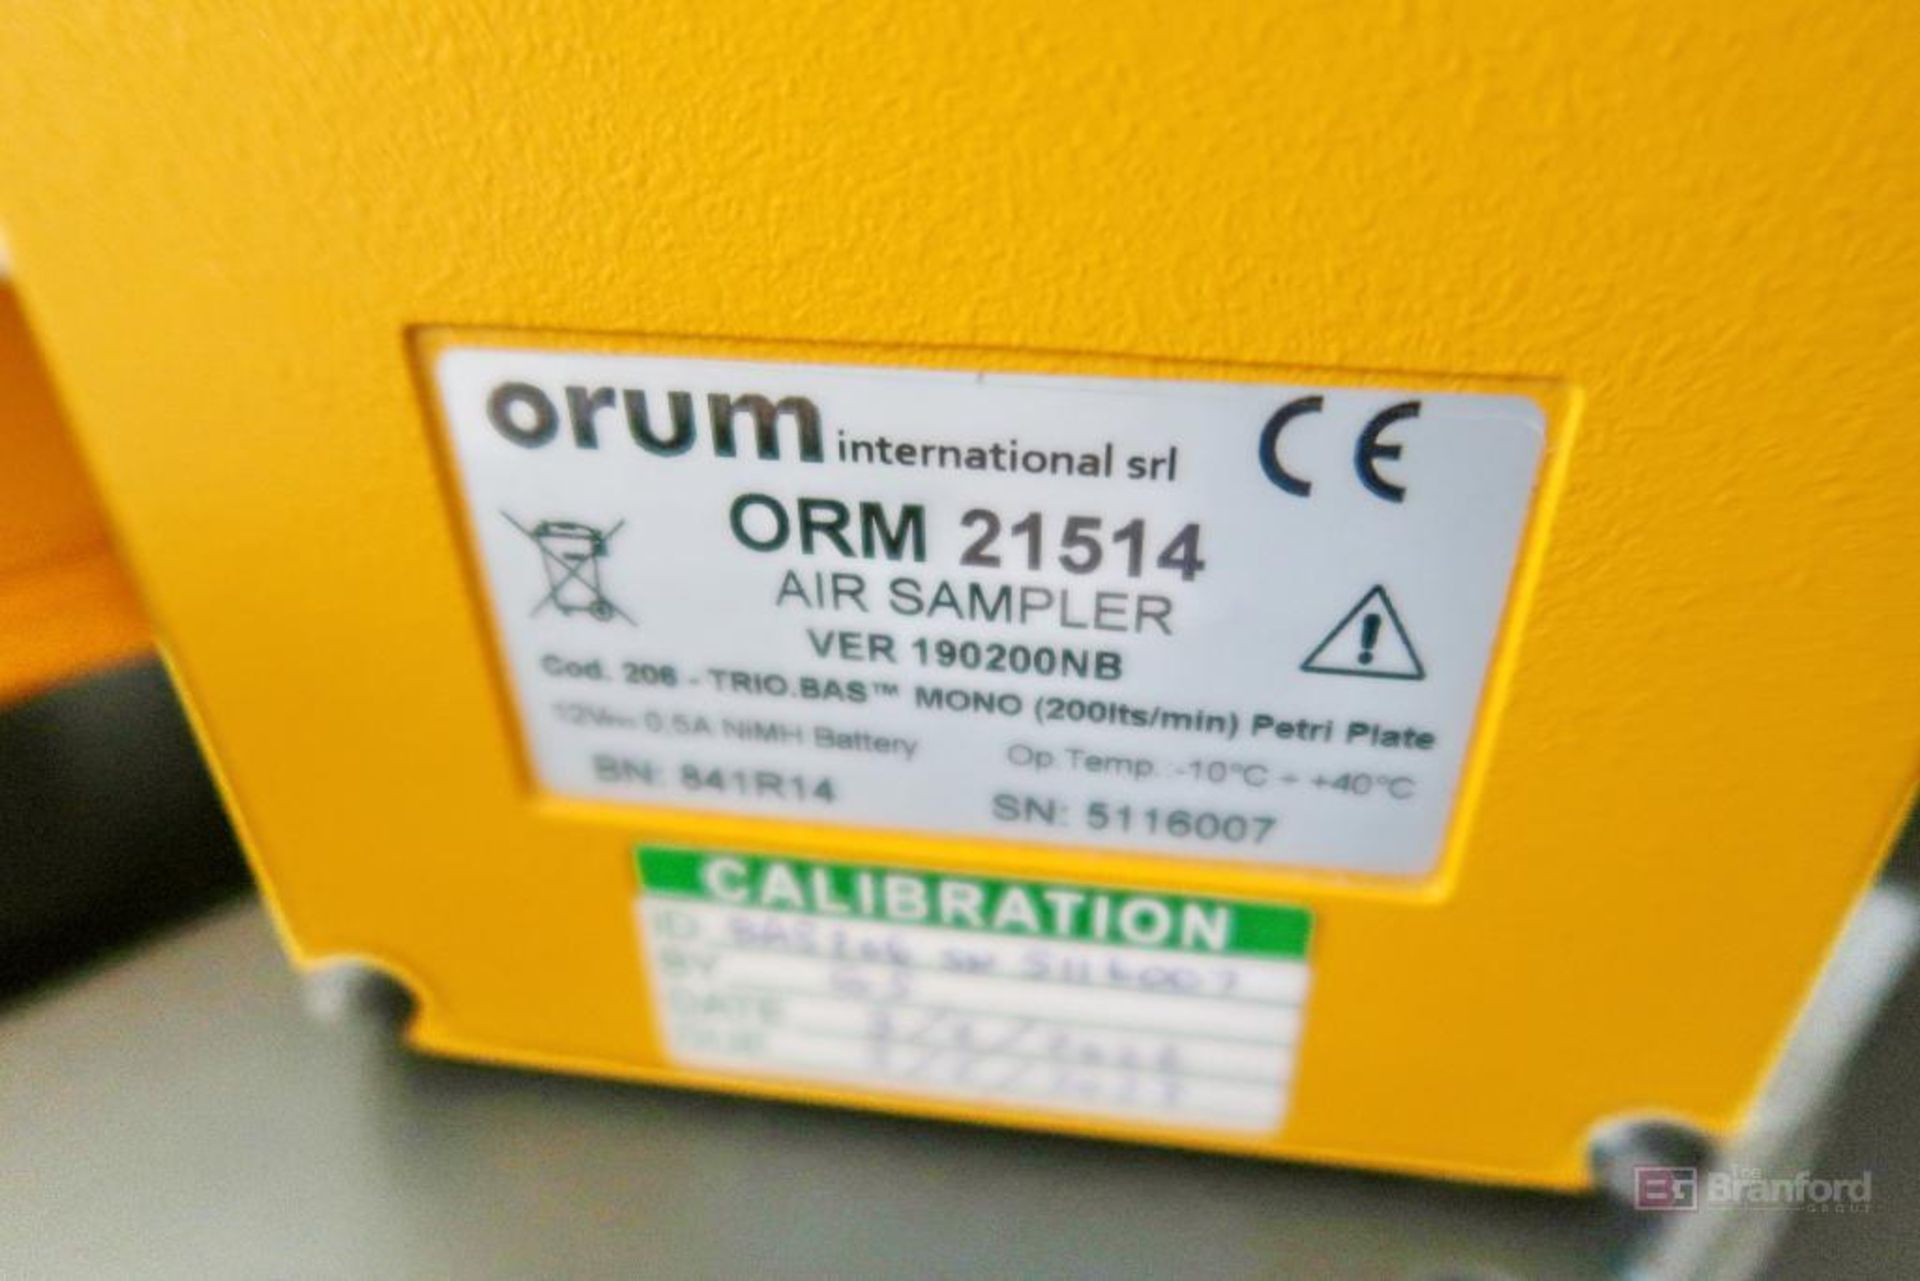 Orum ORM 21514 Air sampler - Image 2 of 2